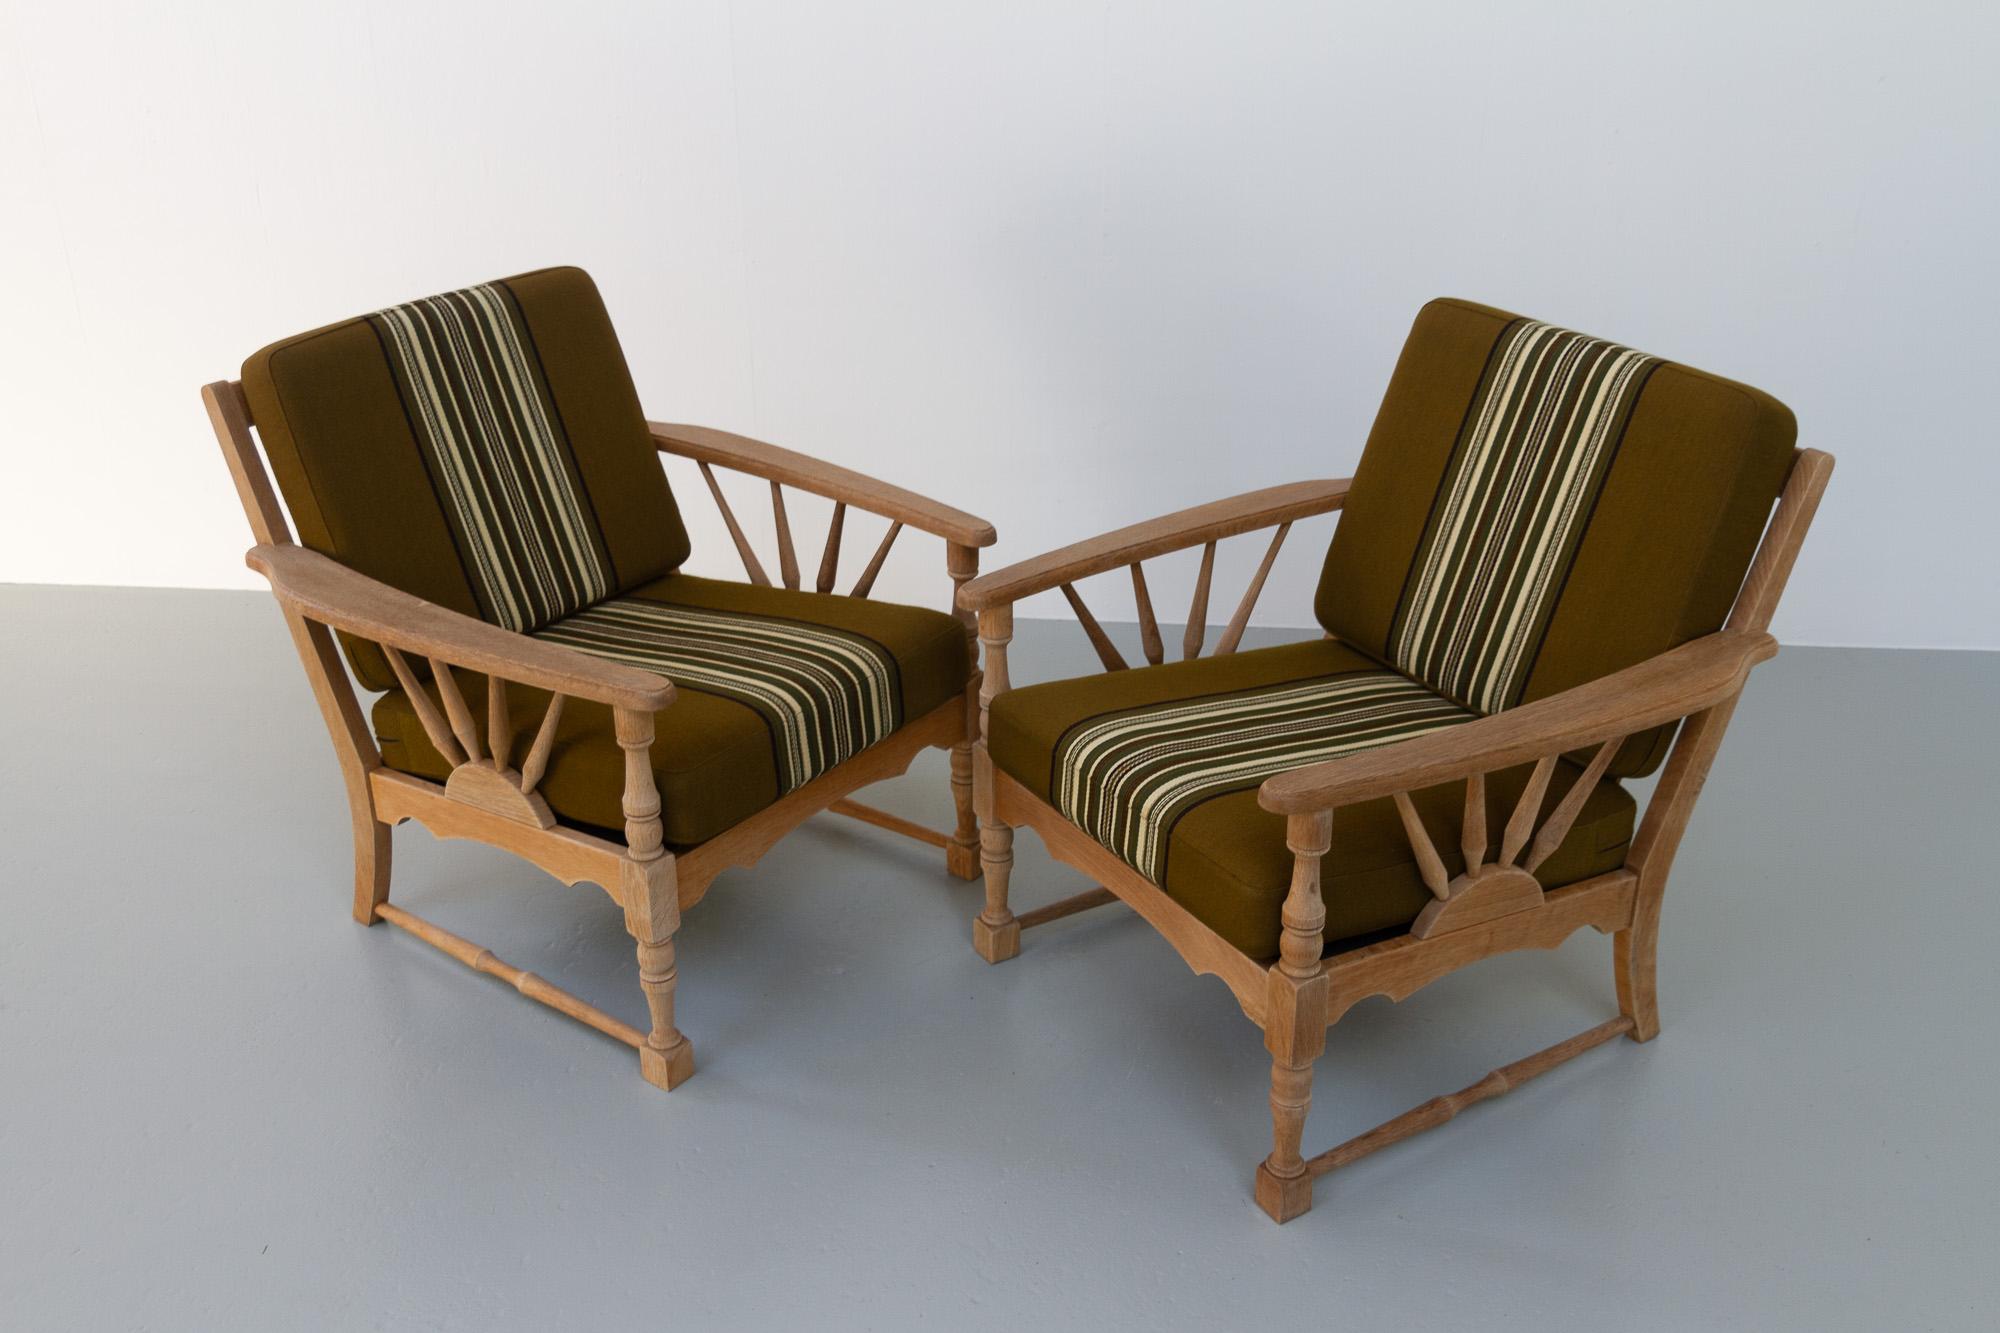 Scandinavian Modern Vintage Danish Lounge Chairs in Oak, 1960s. Set of 2.